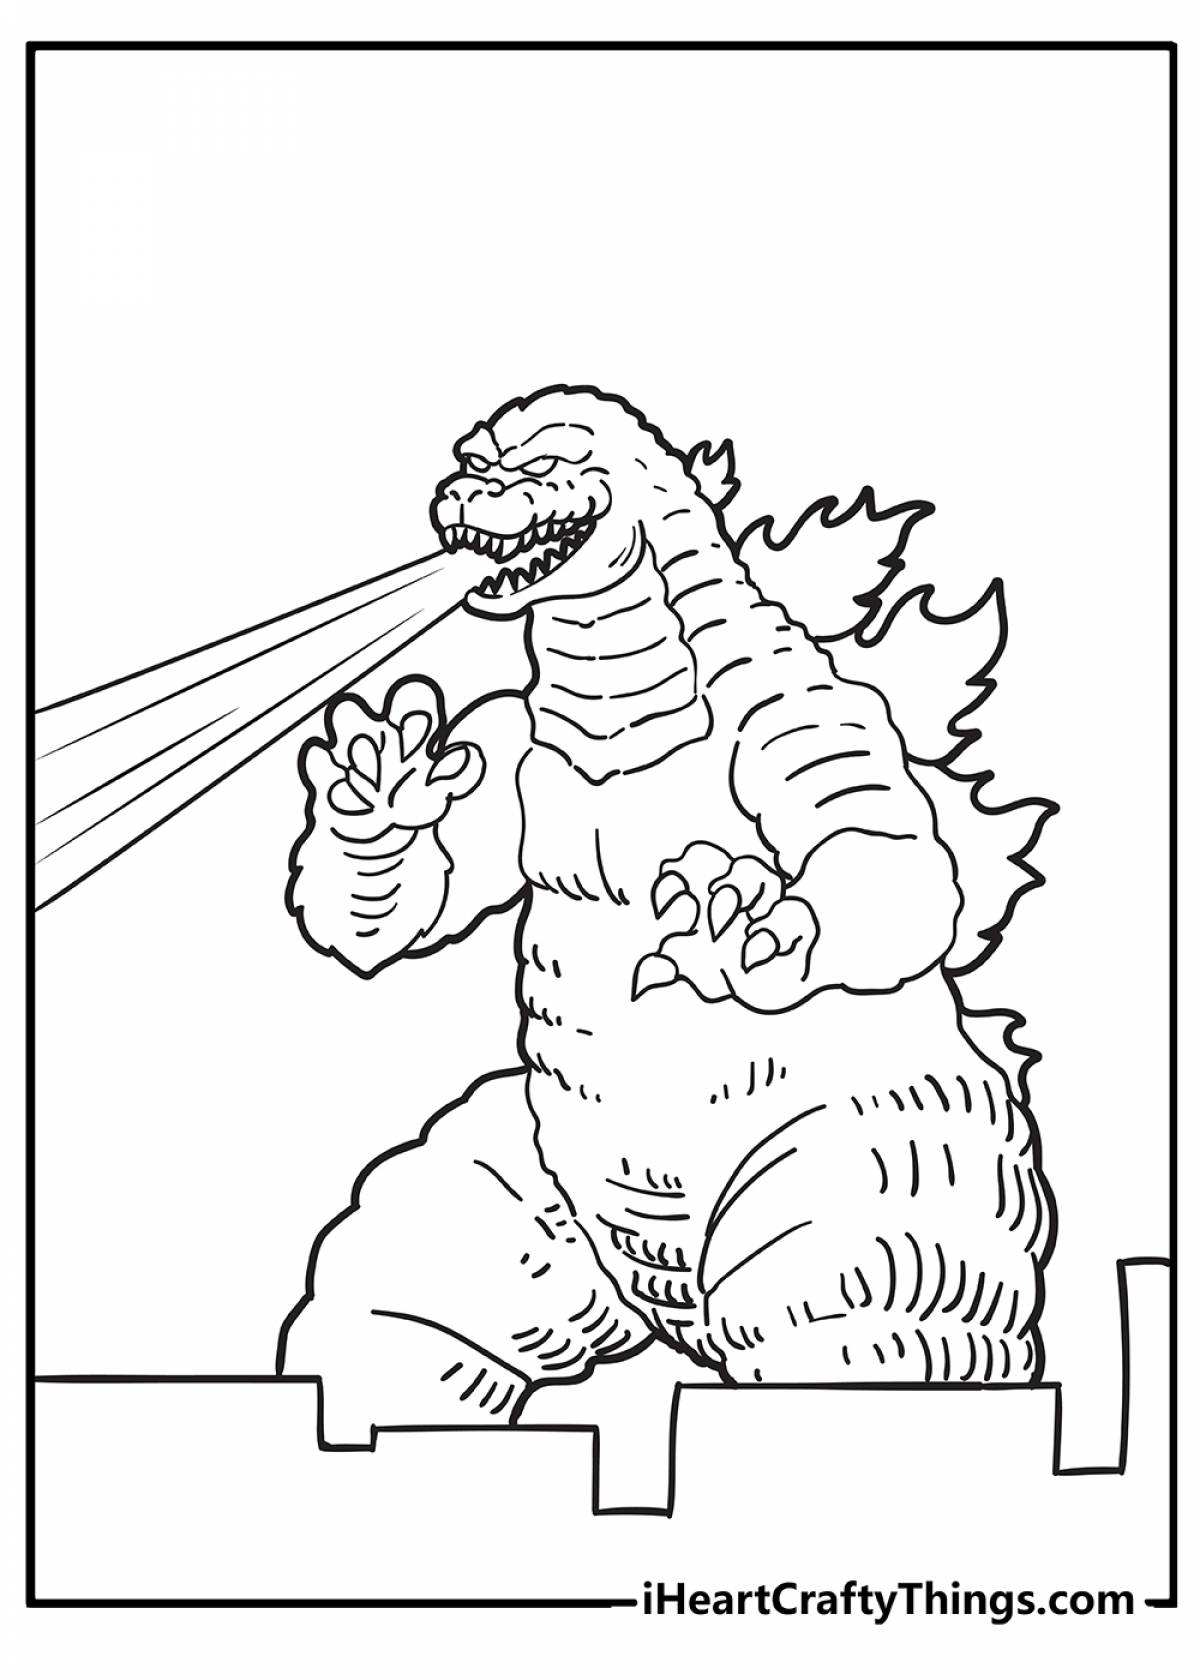 Adorable Godzilla and Kingidora coloring book